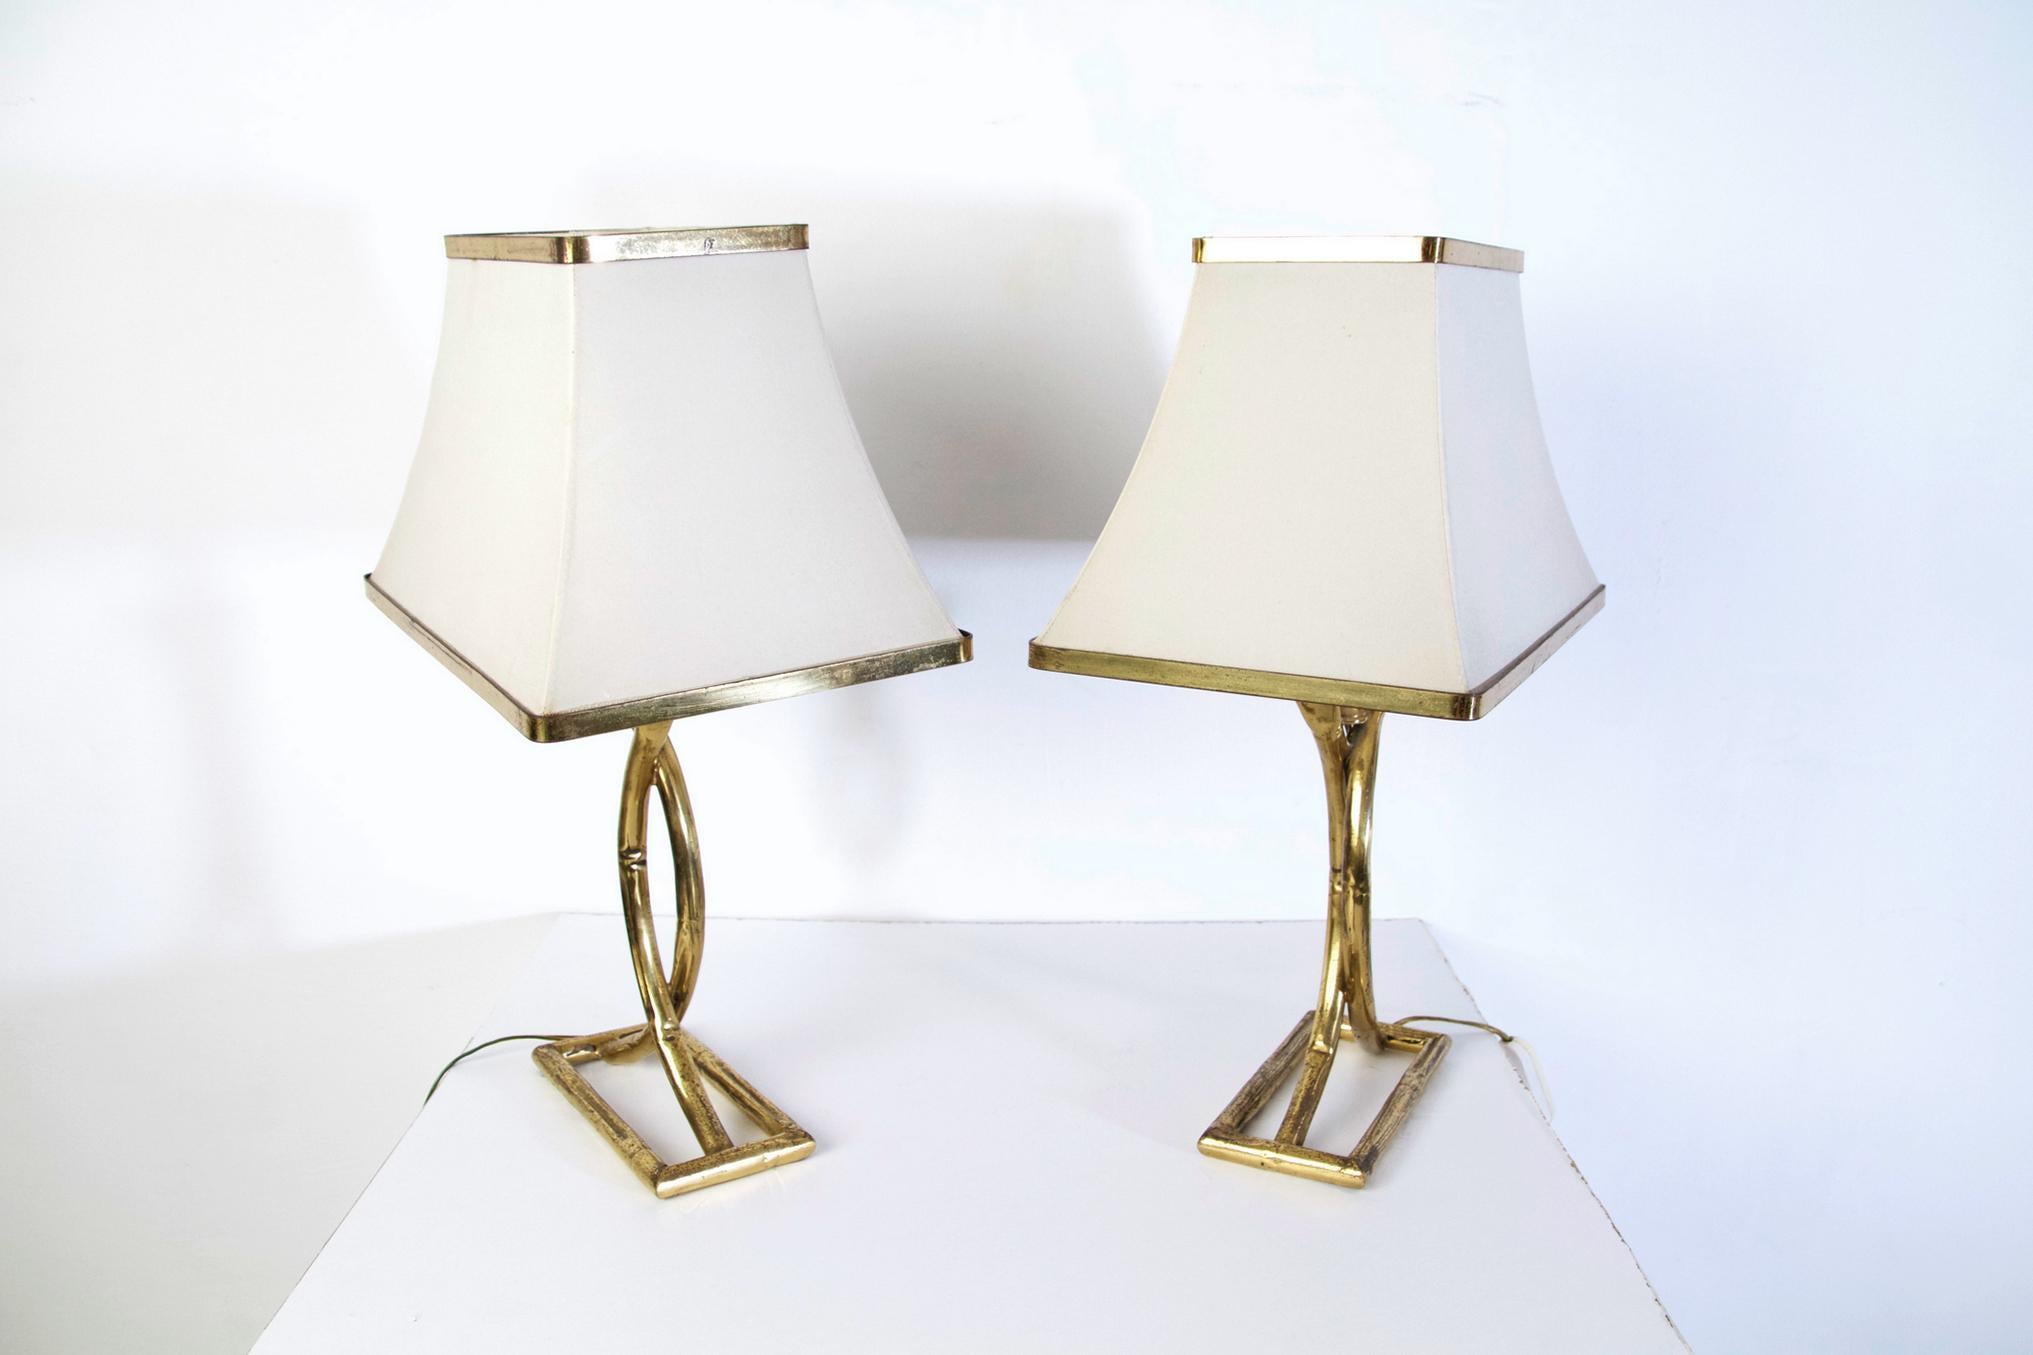 Paar schöne Vintage-Tischlampen aus Messing-Bambus-Imitat mit rechteckigen Sockeln und weißen pagodenförmigen weißen Lampenschirmen. Das Messing hat Patina angesetzt und kann poliert werden, um noch mehr zu glänzen.